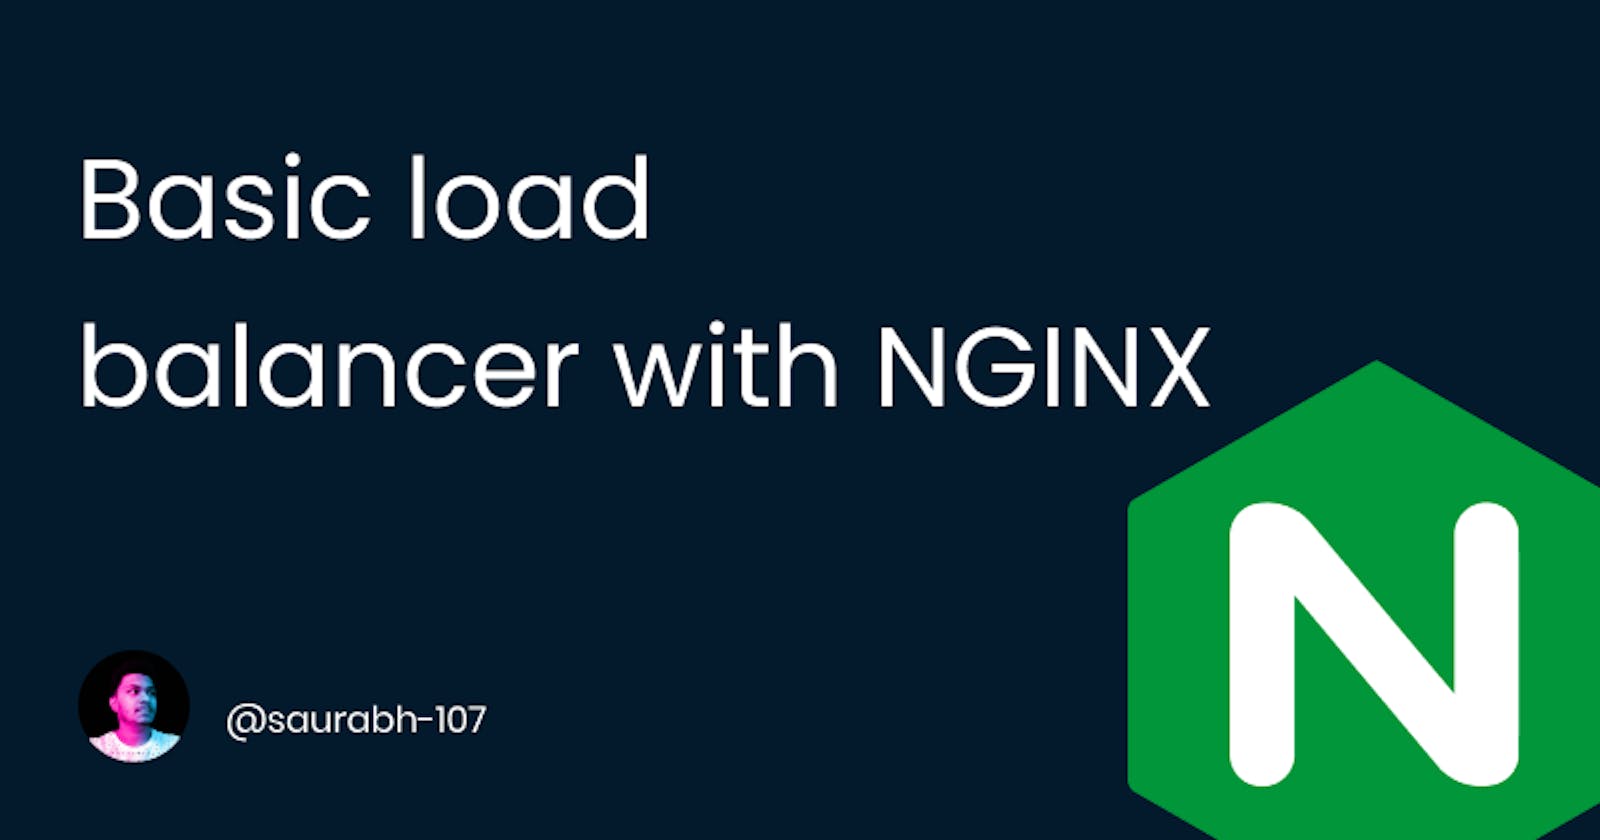 Basic load balancer with NGINX